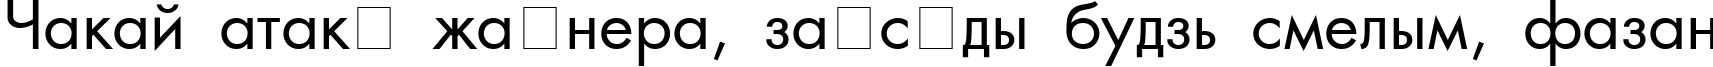 Пример написания шрифтом AG_Futura текста на белорусском